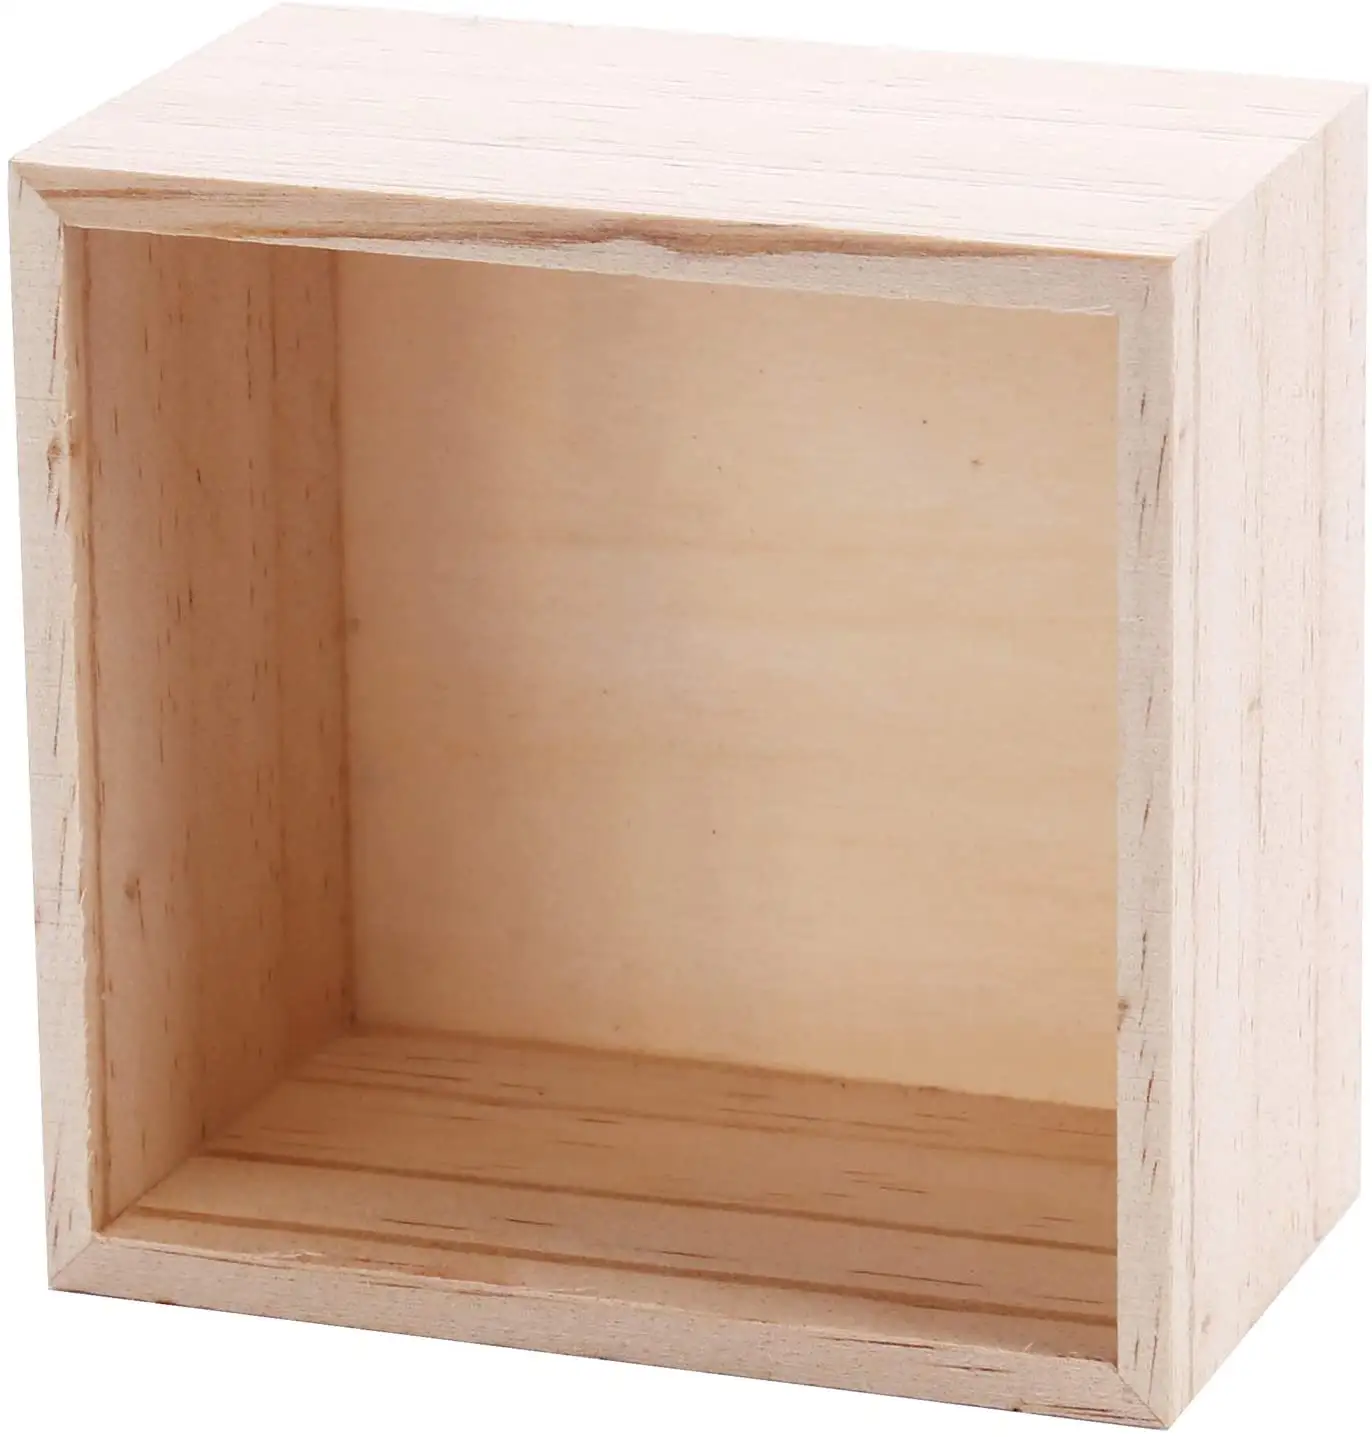 Caja de Madera naturel bois massif lisse boîte placée sur le bureau balcon végétales cultivées stockage bijoux artisanat en bois